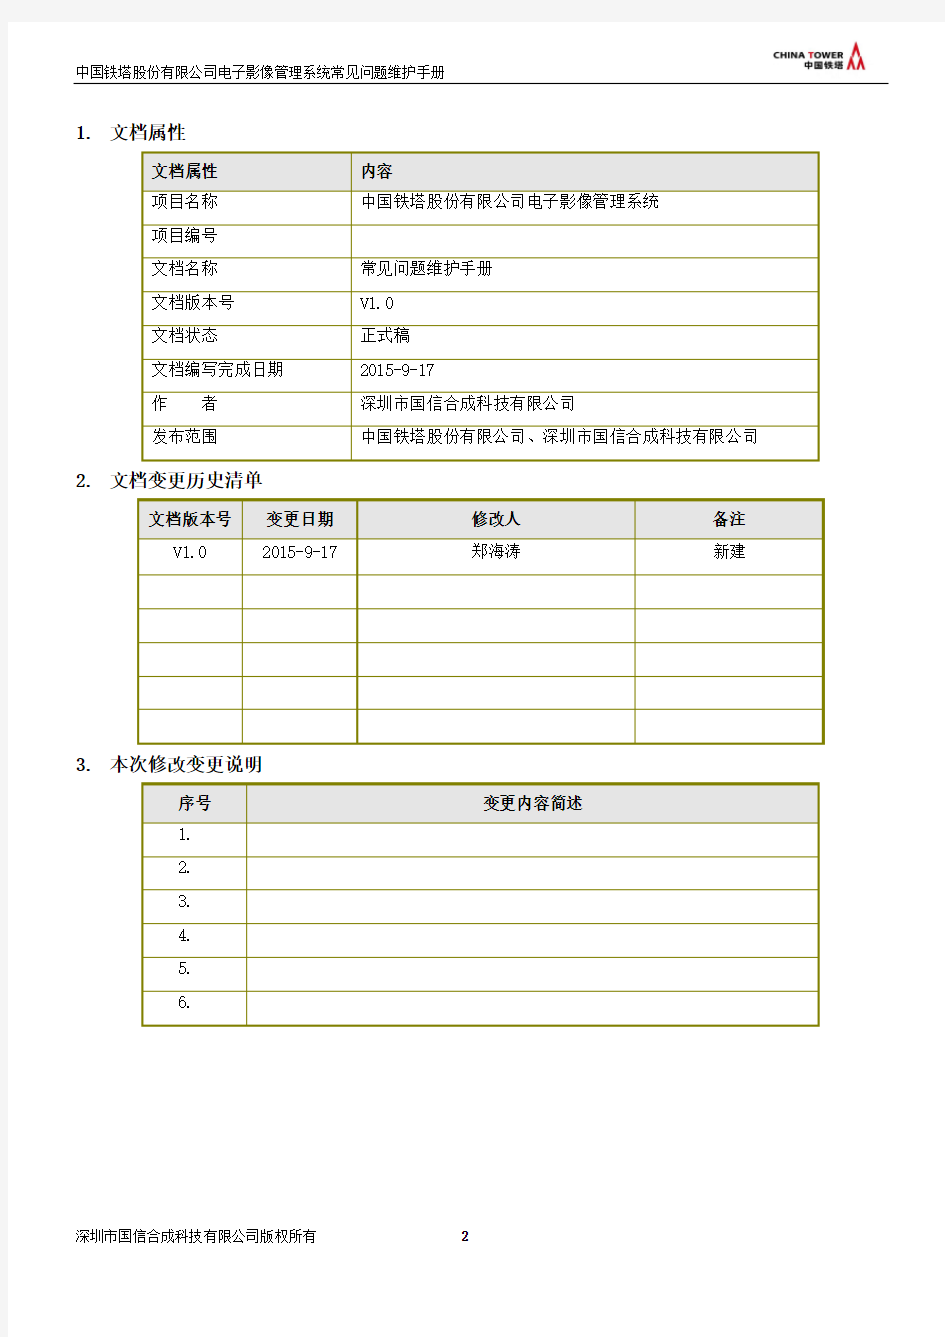 中国铁塔股份有限公司电子影像管理系统常见问题维护手册V1.0